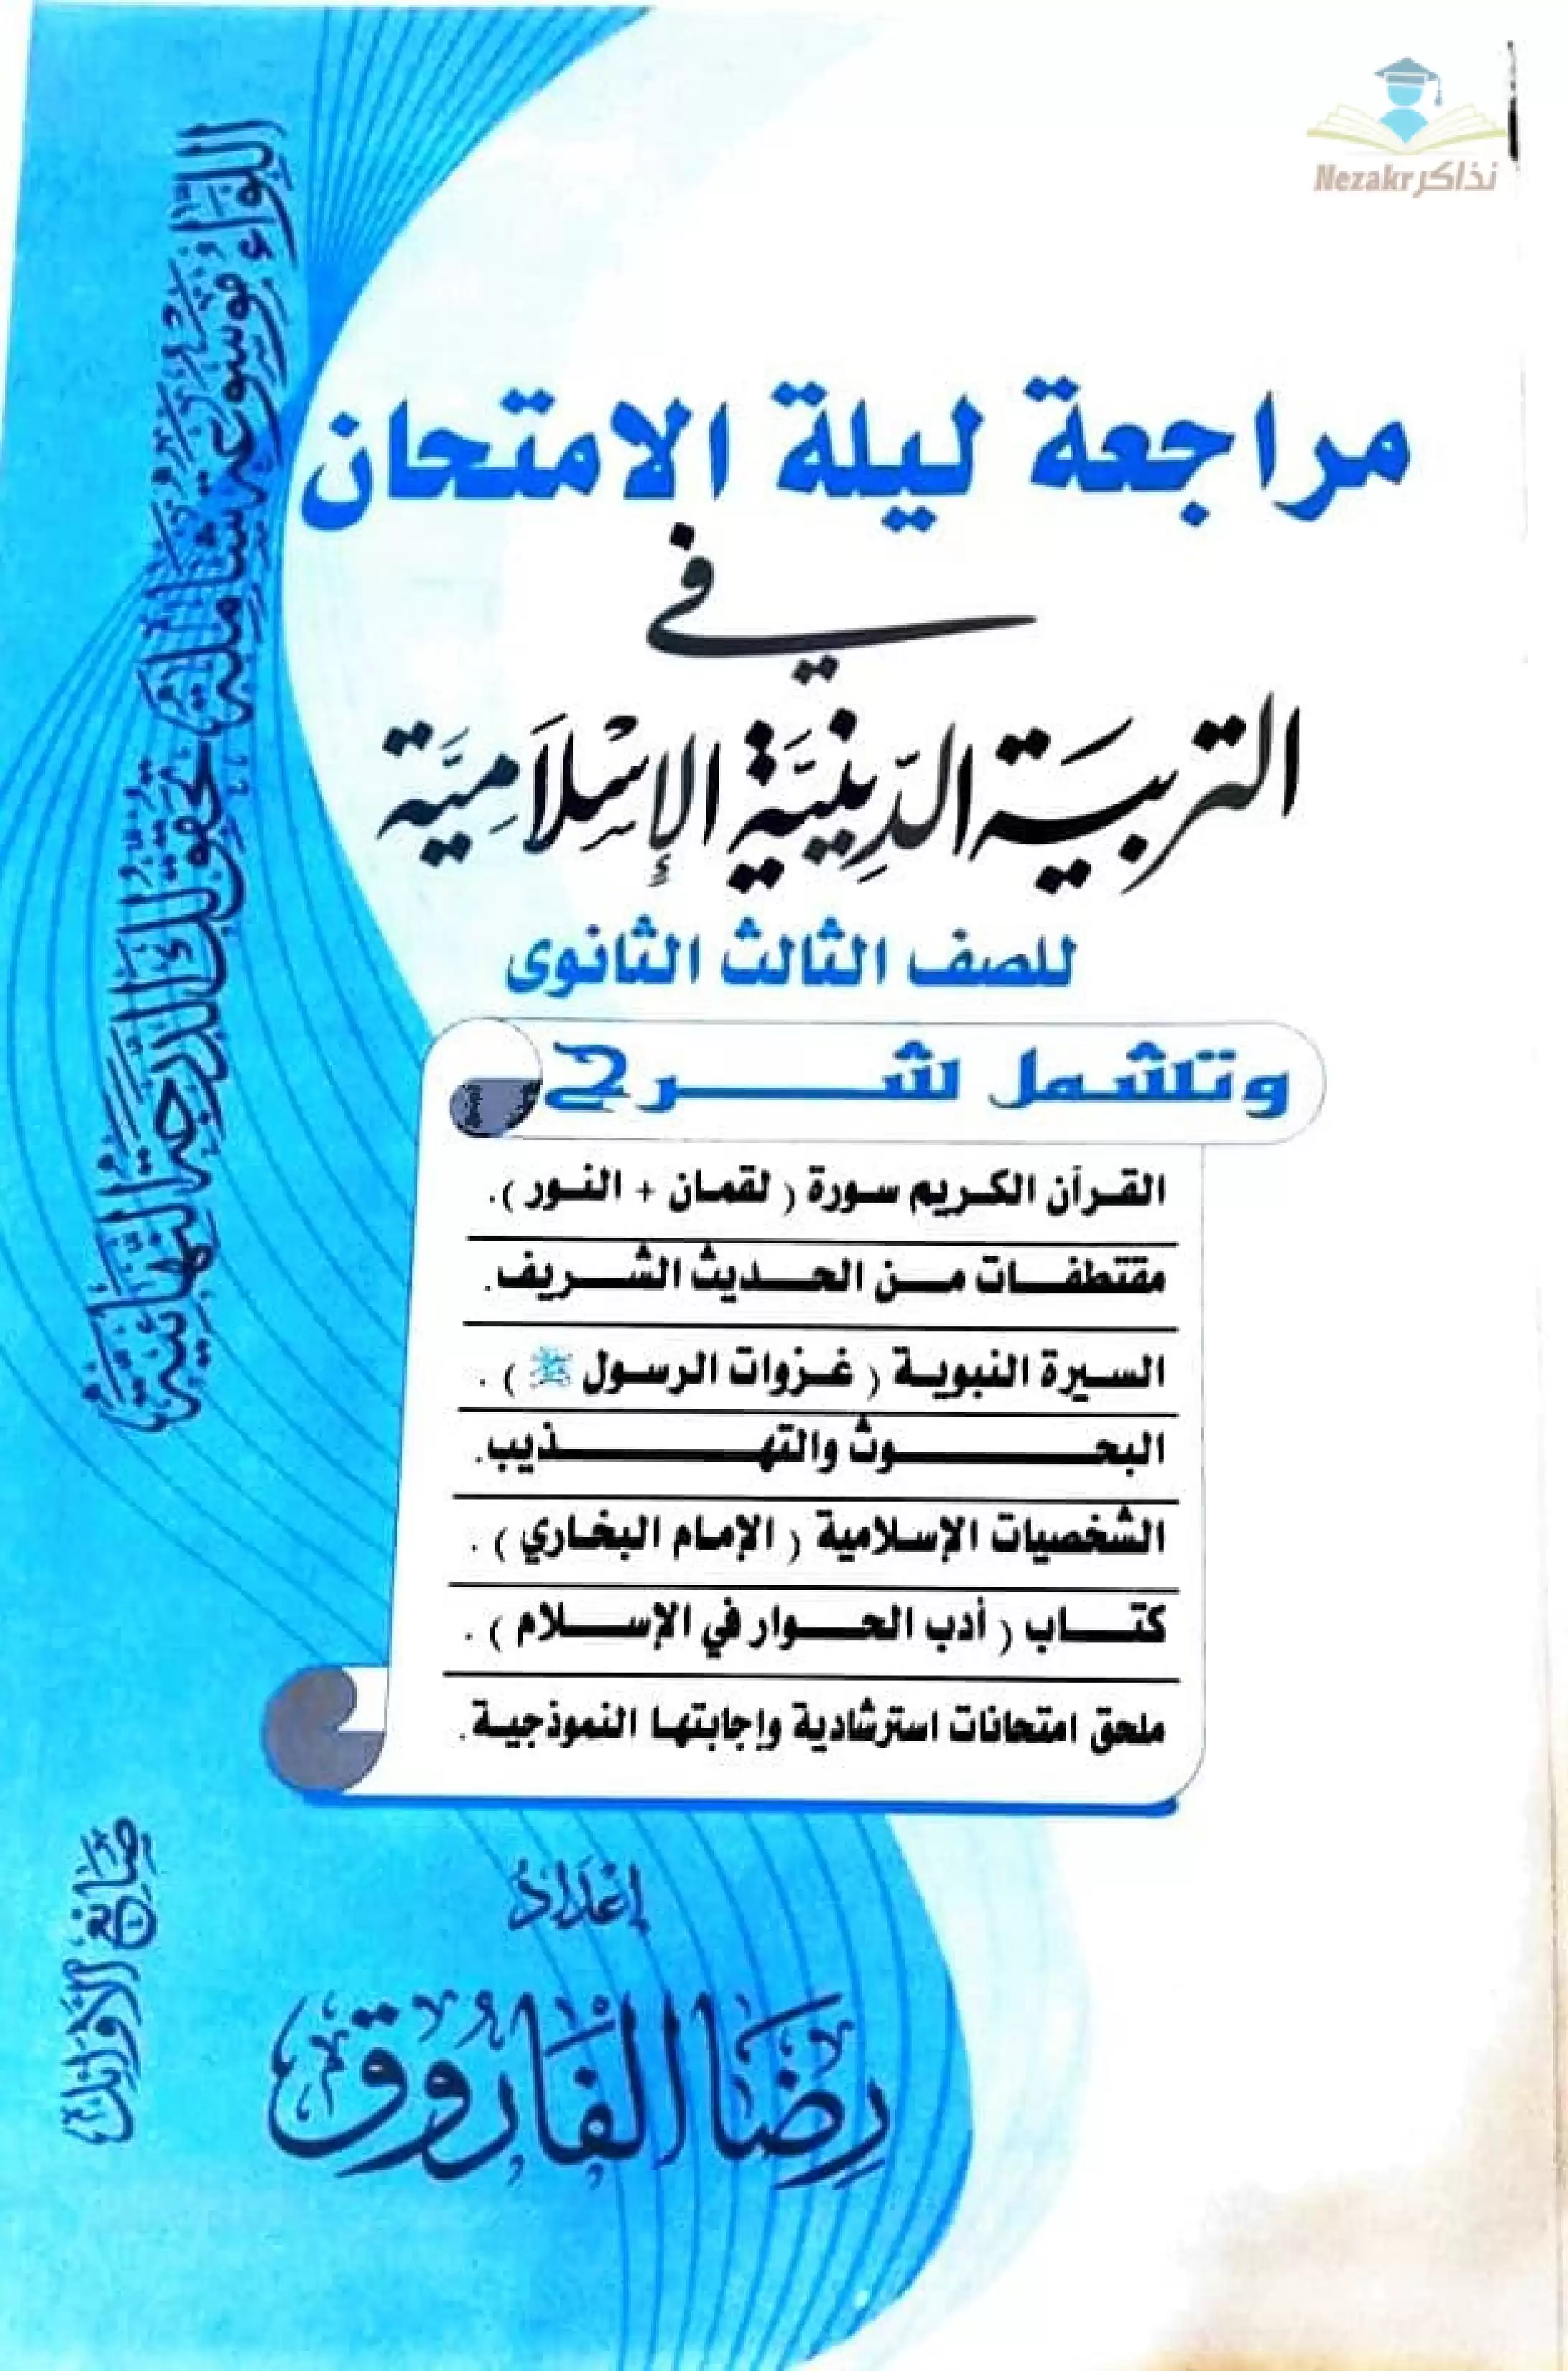 تحميل مراجعة التربية الدينية الاسلامية للثانوية العامة من إعداد الأستاذ رضا الفاروق